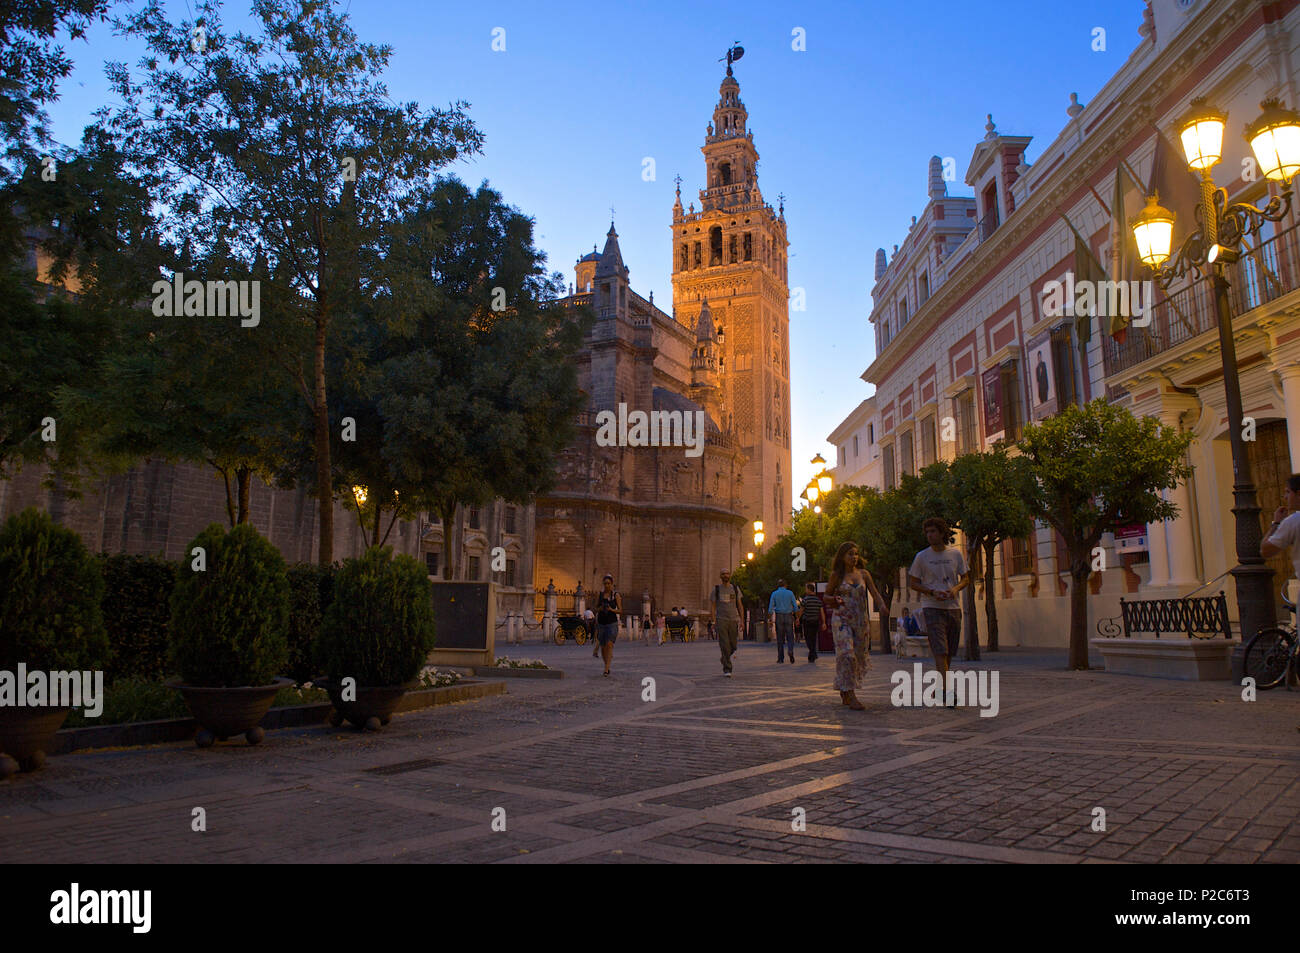 Plaza del Triunfo near the cathedral, Giralda, Sevilla, Andalusia, Spain, Europe Stock Photo